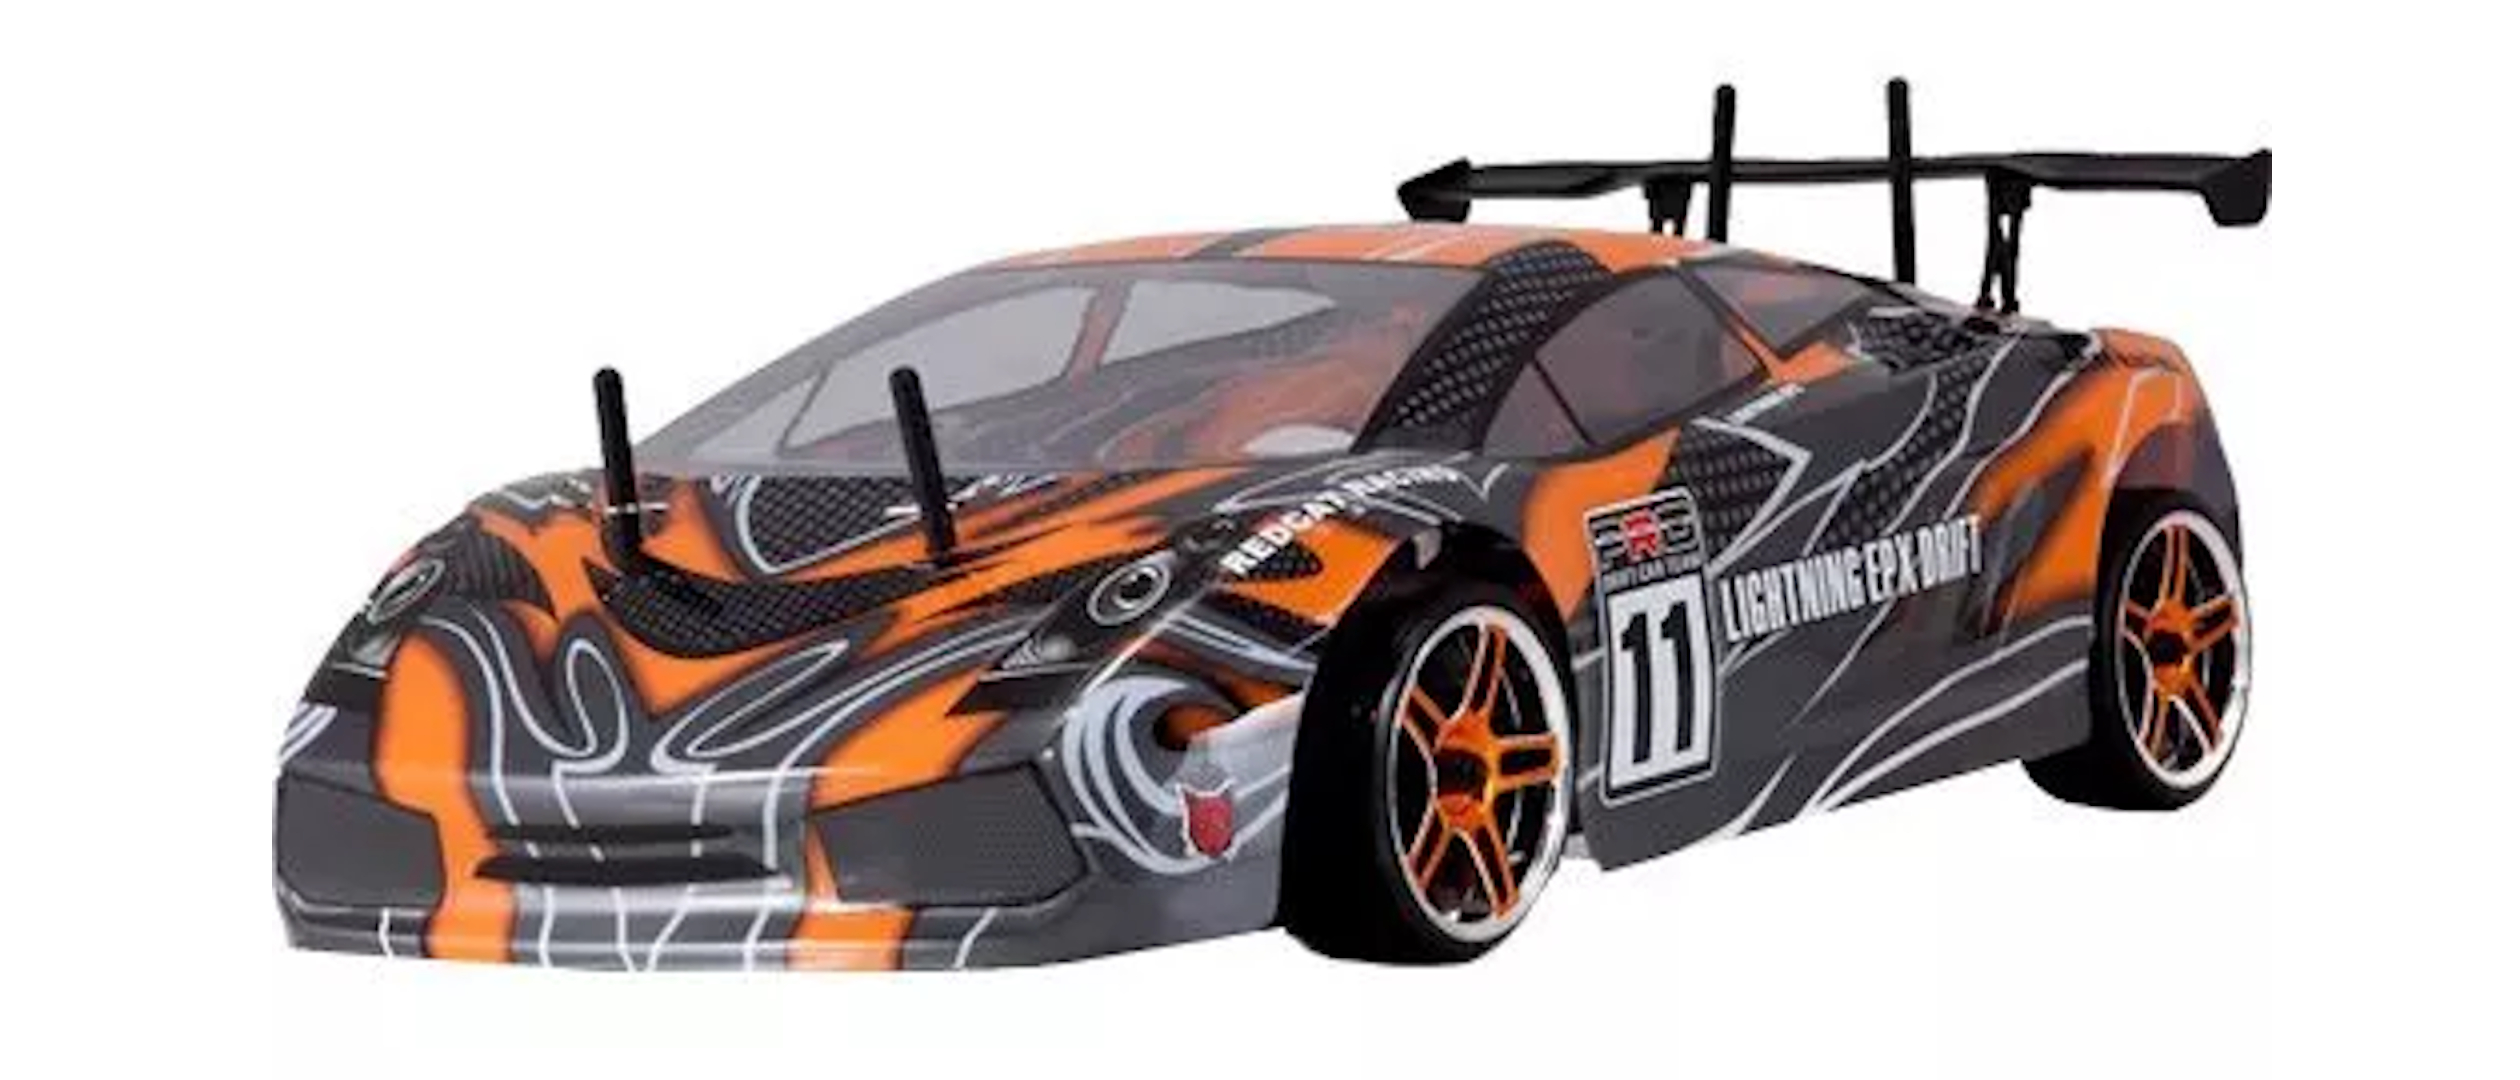 Redcat Racing Lightning EPX Drift Review | Top Ten Reviews